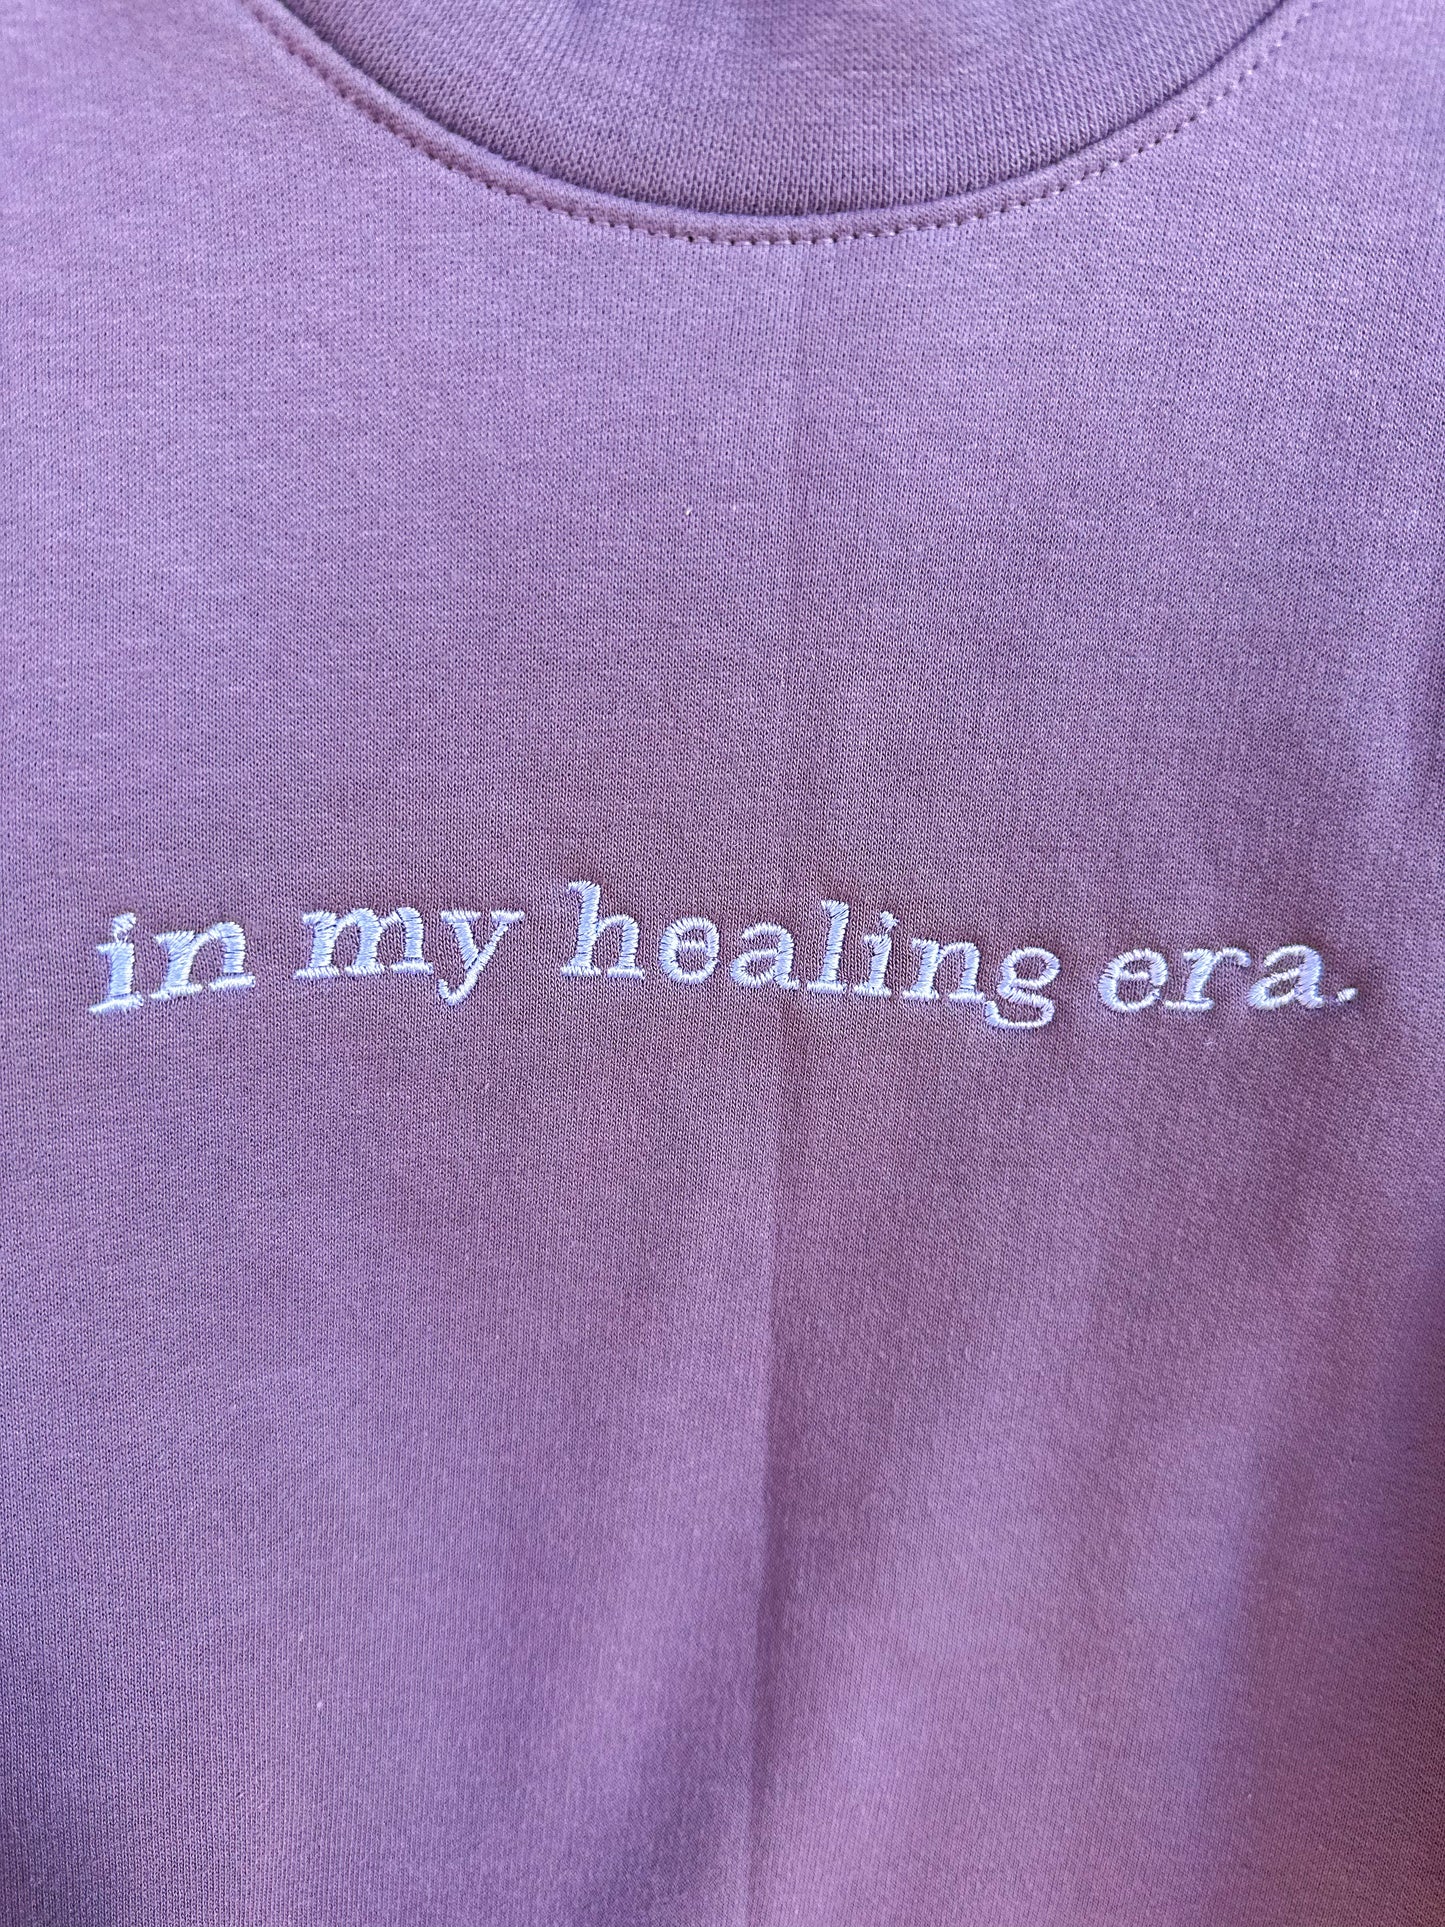 Healing Era Crewneck